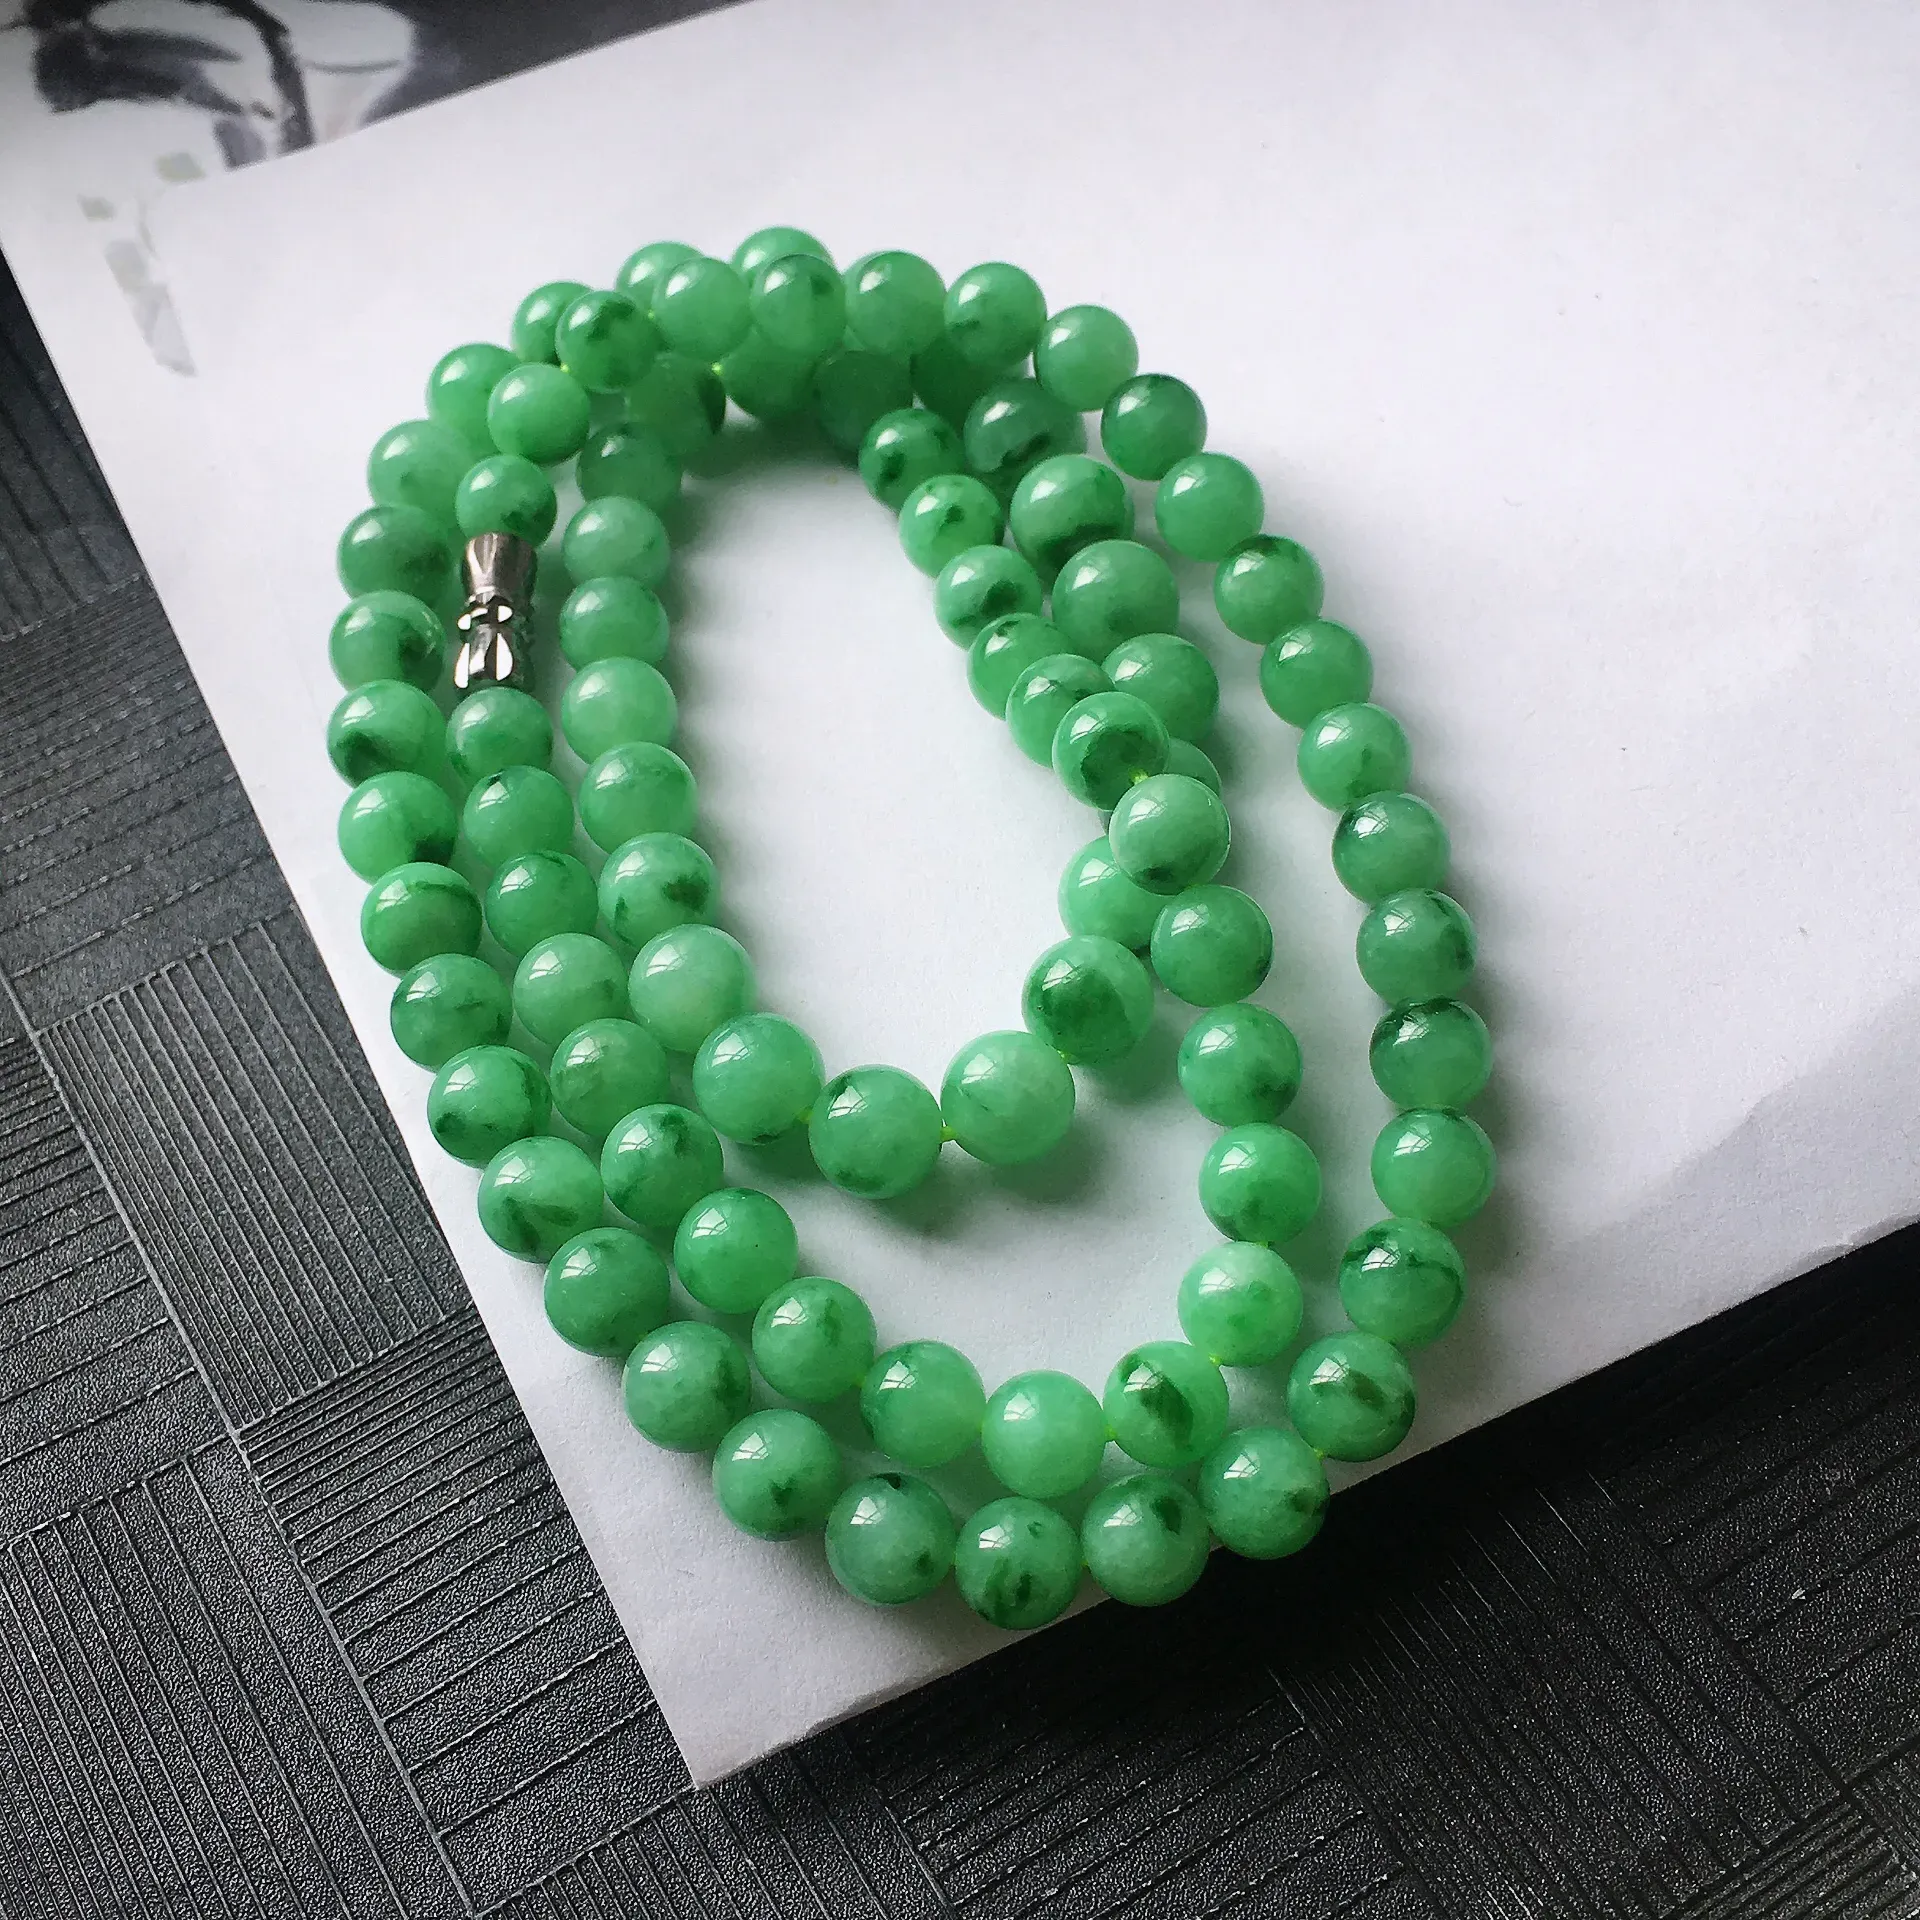 天然A货翡翠满绿圆珠项链，种水好，玉质细腻温润，颜色漂亮。尺寸：取大 7.6mm 取小 6.1mm 项链周长：56cm